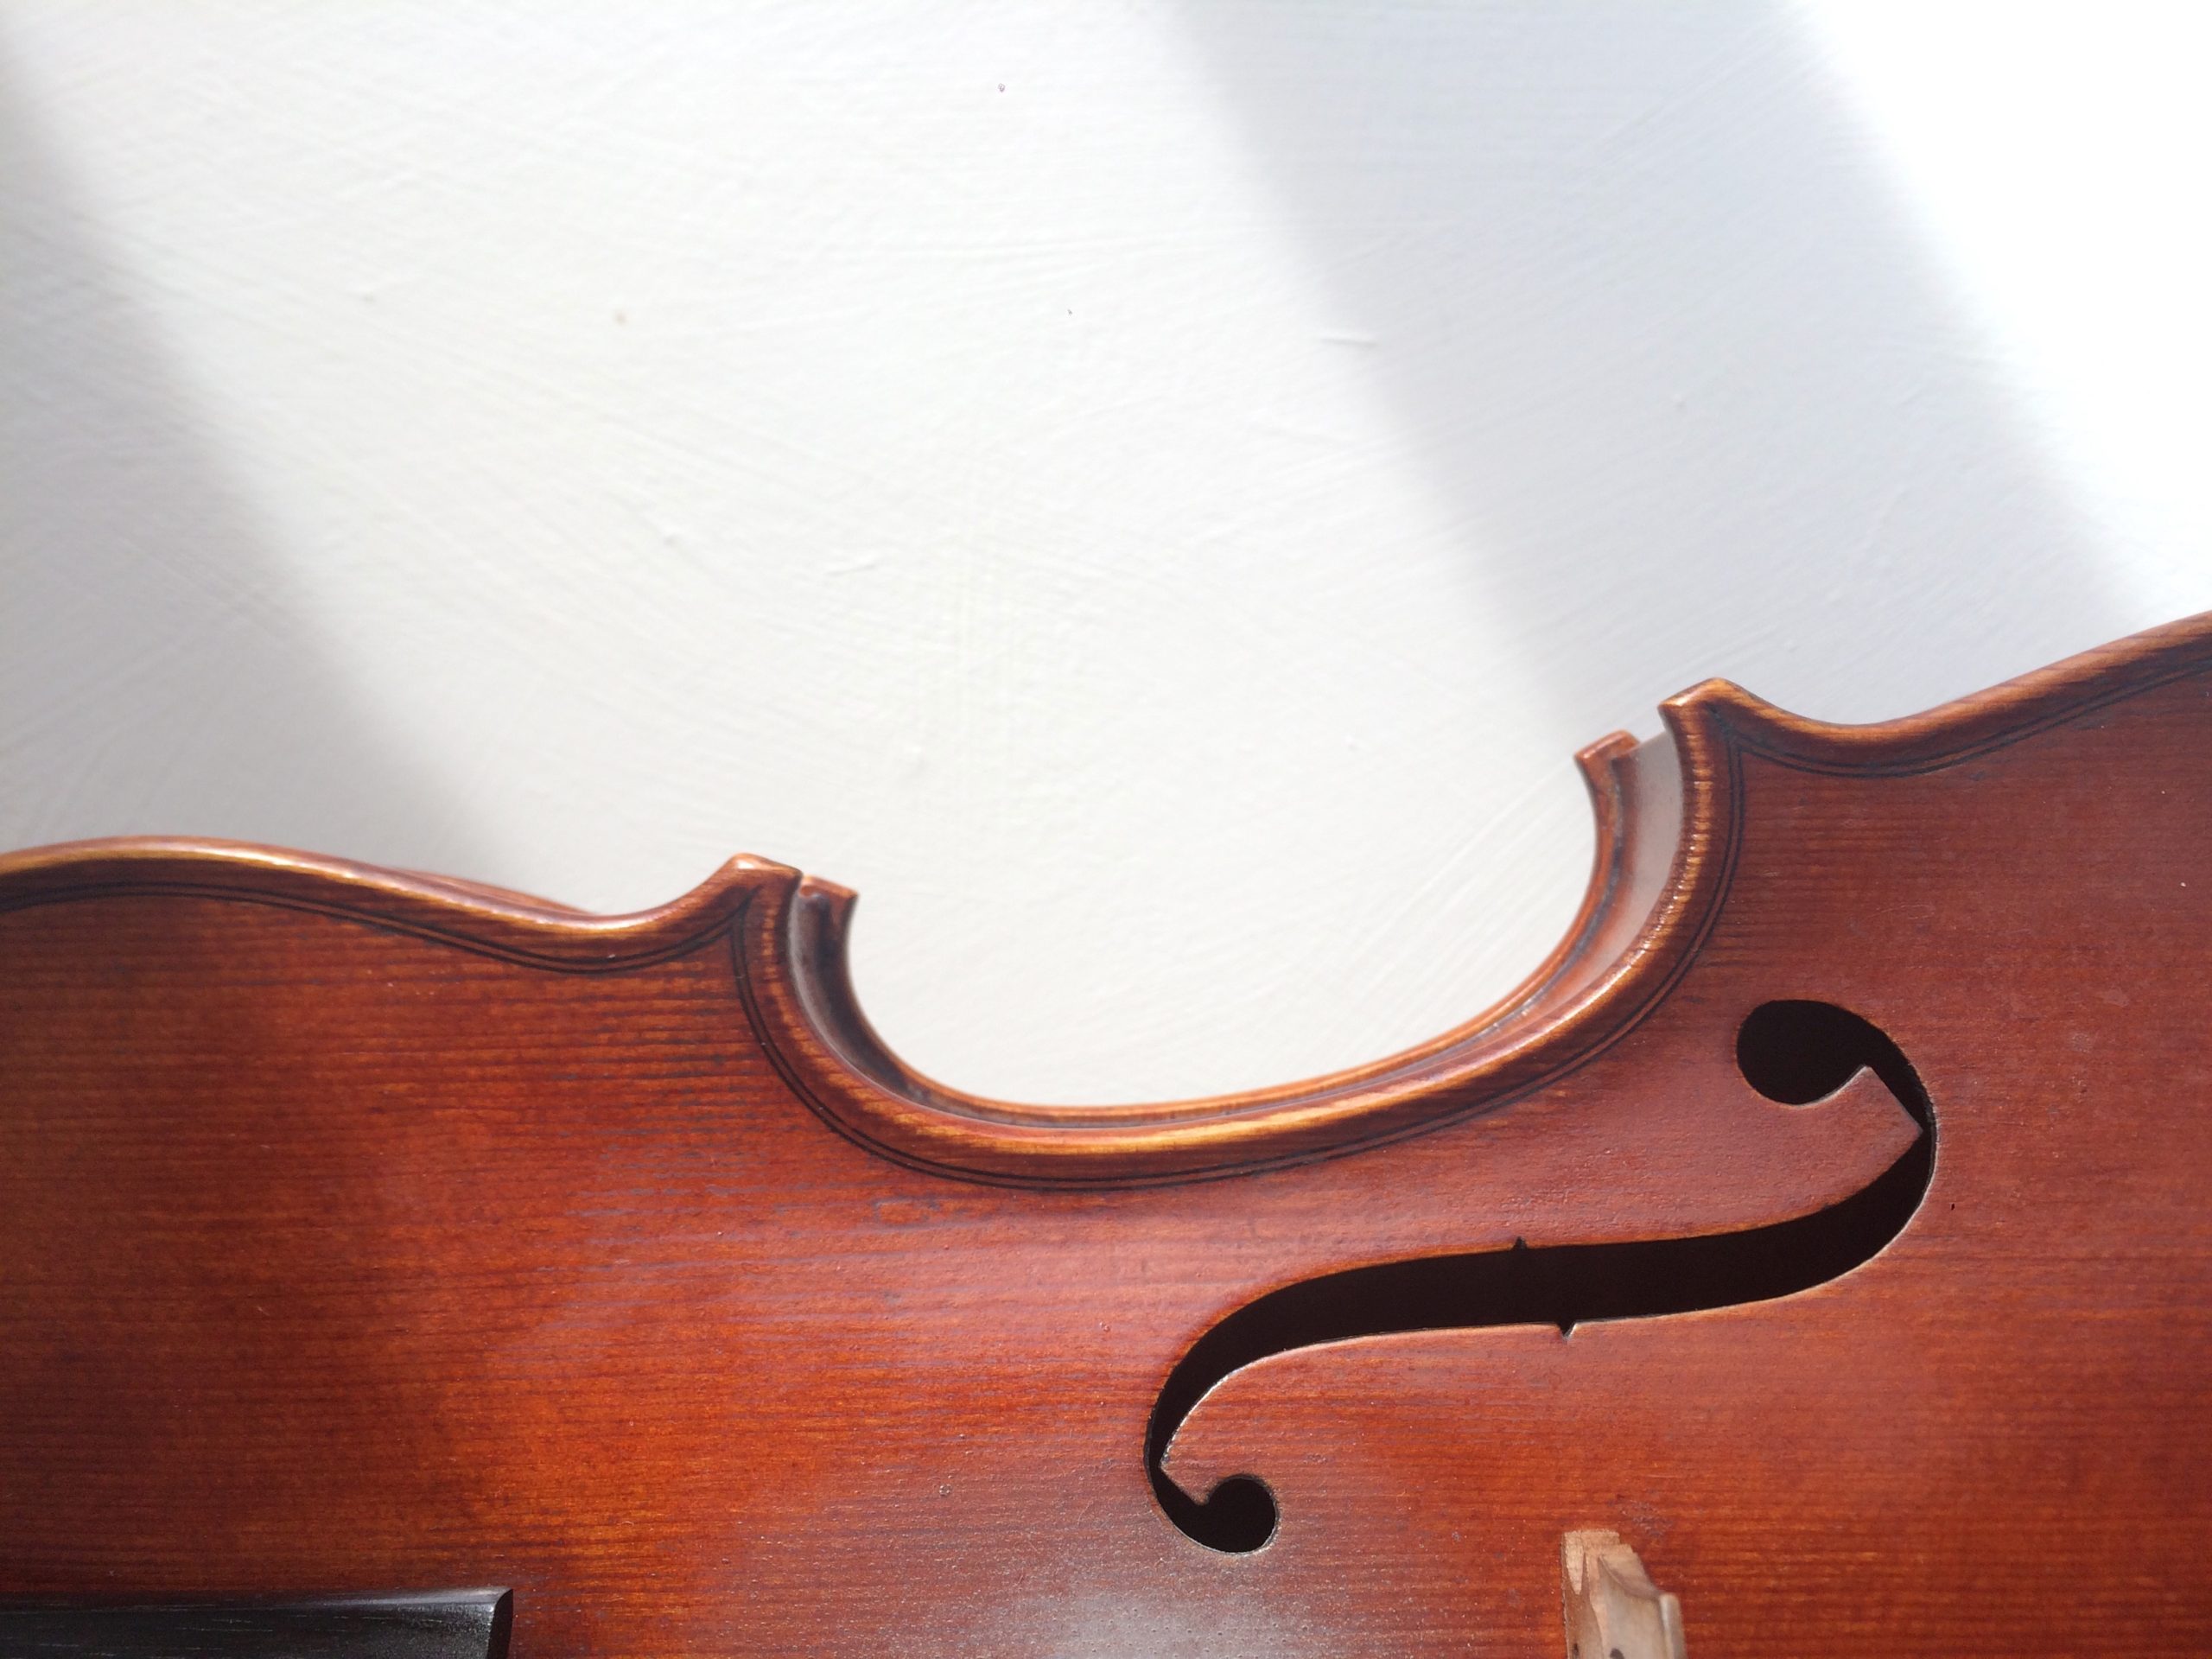 Baroque violin detail